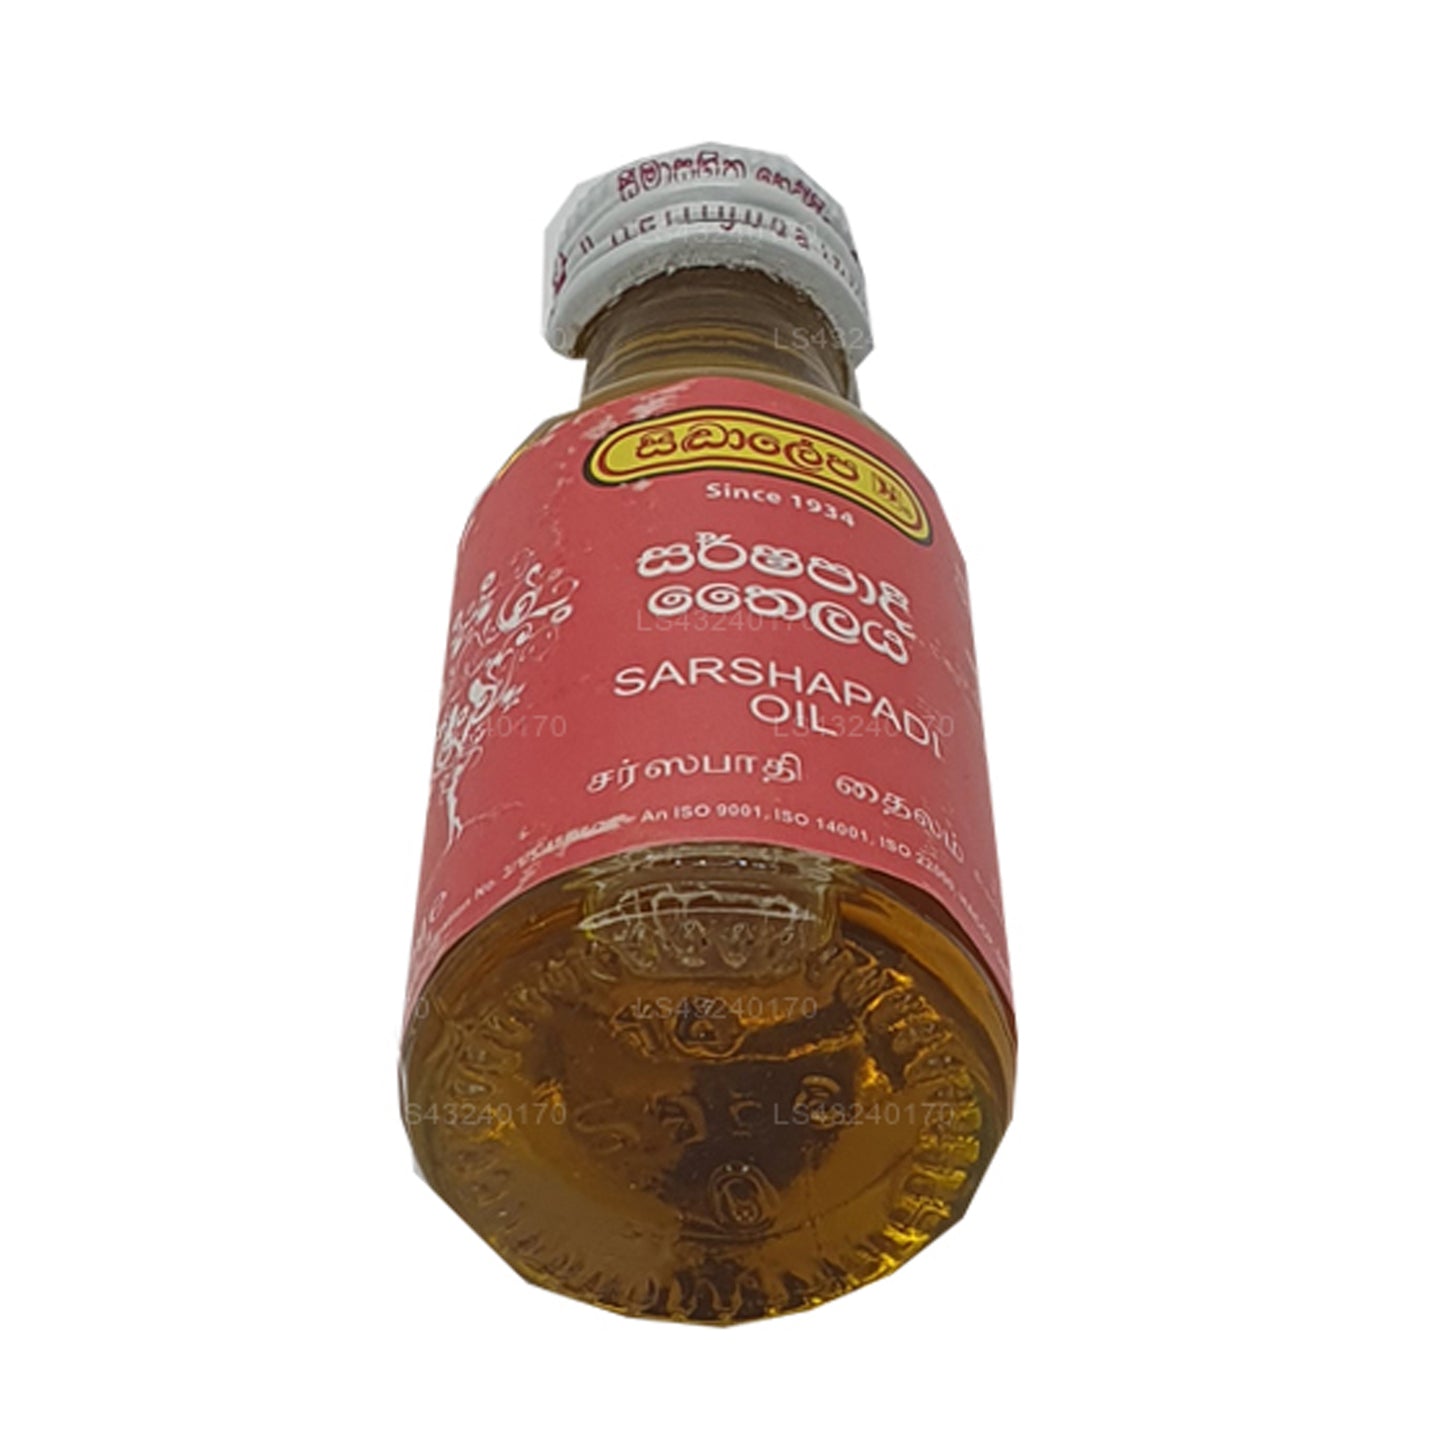 Siddhalepa Sarshapadi Öl (30 ml)